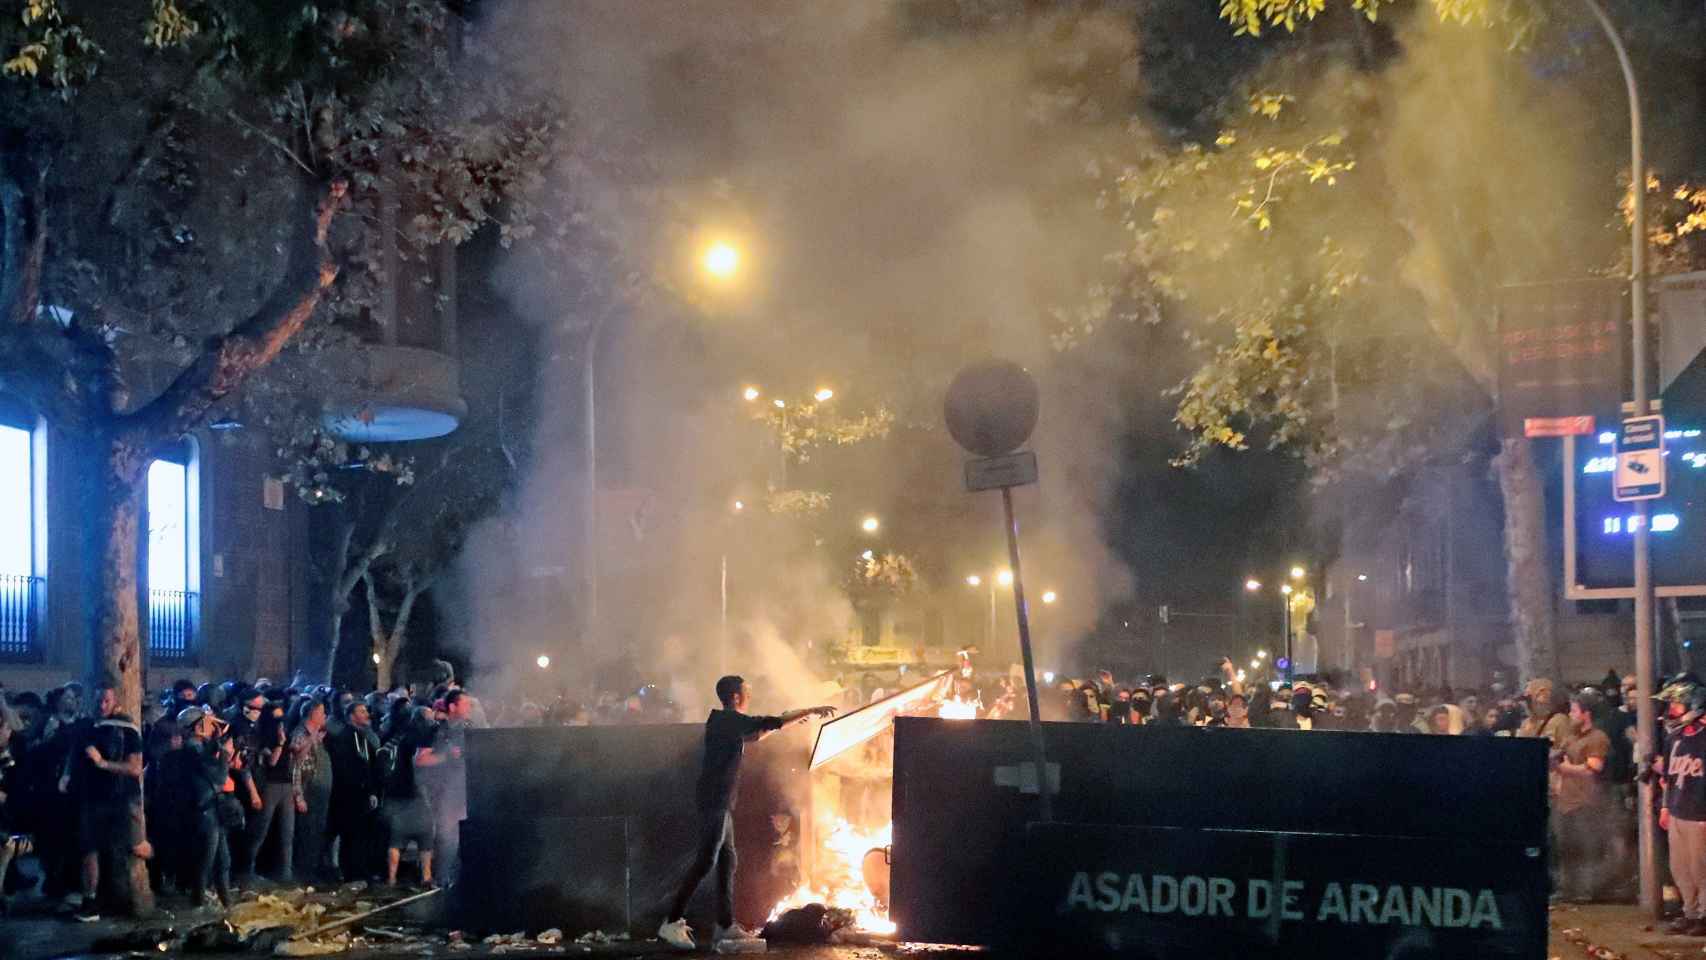 Centenares de manifestantes junto a una barricada de fuego en Pau Claris, frente al restaurante 'El Asador de Aranda' / EFE